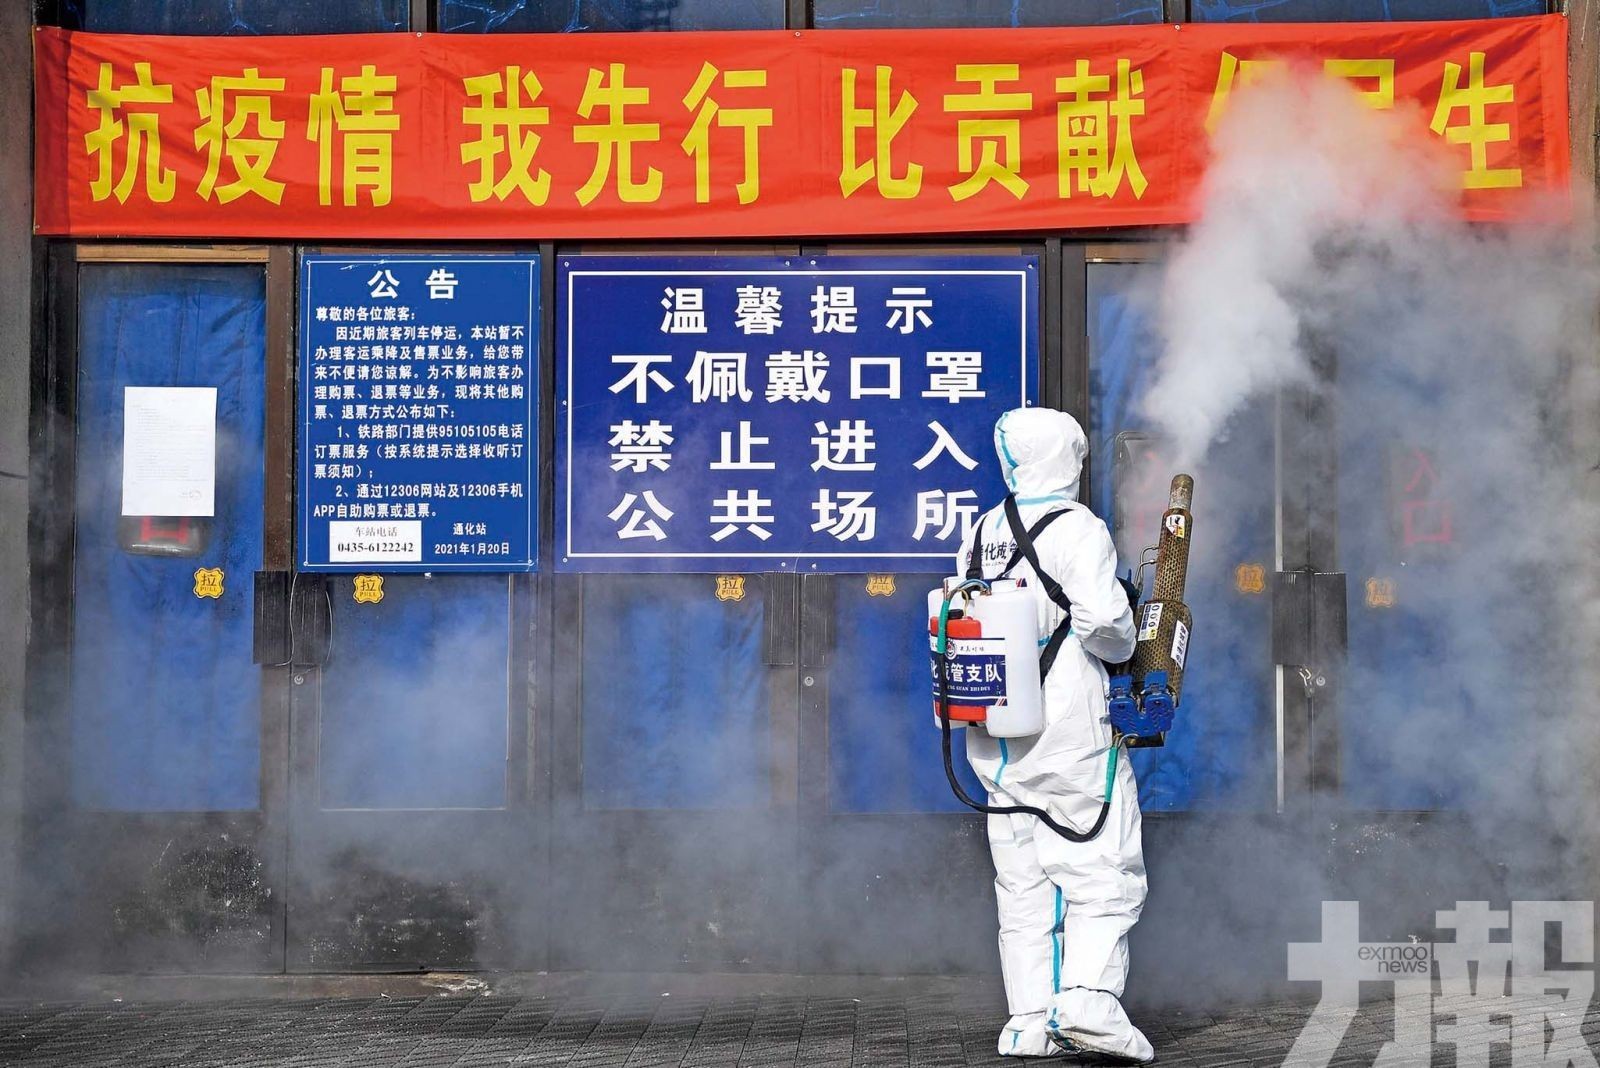 上海佔逾1.7萬再增11宗死亡病例